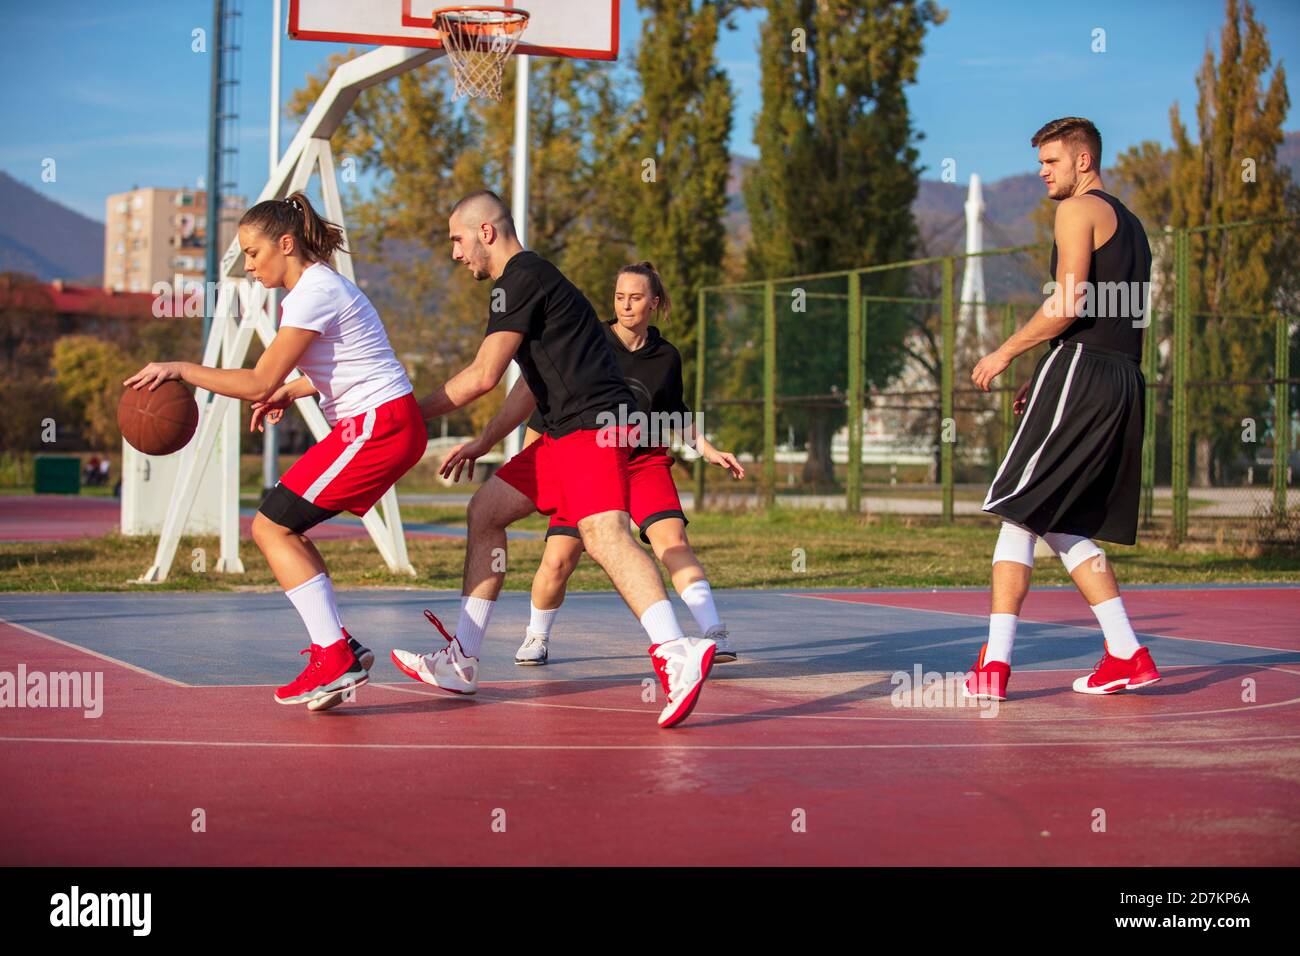 Groupe de jeunes amis jouant au basket-ball Match Banque D'Images